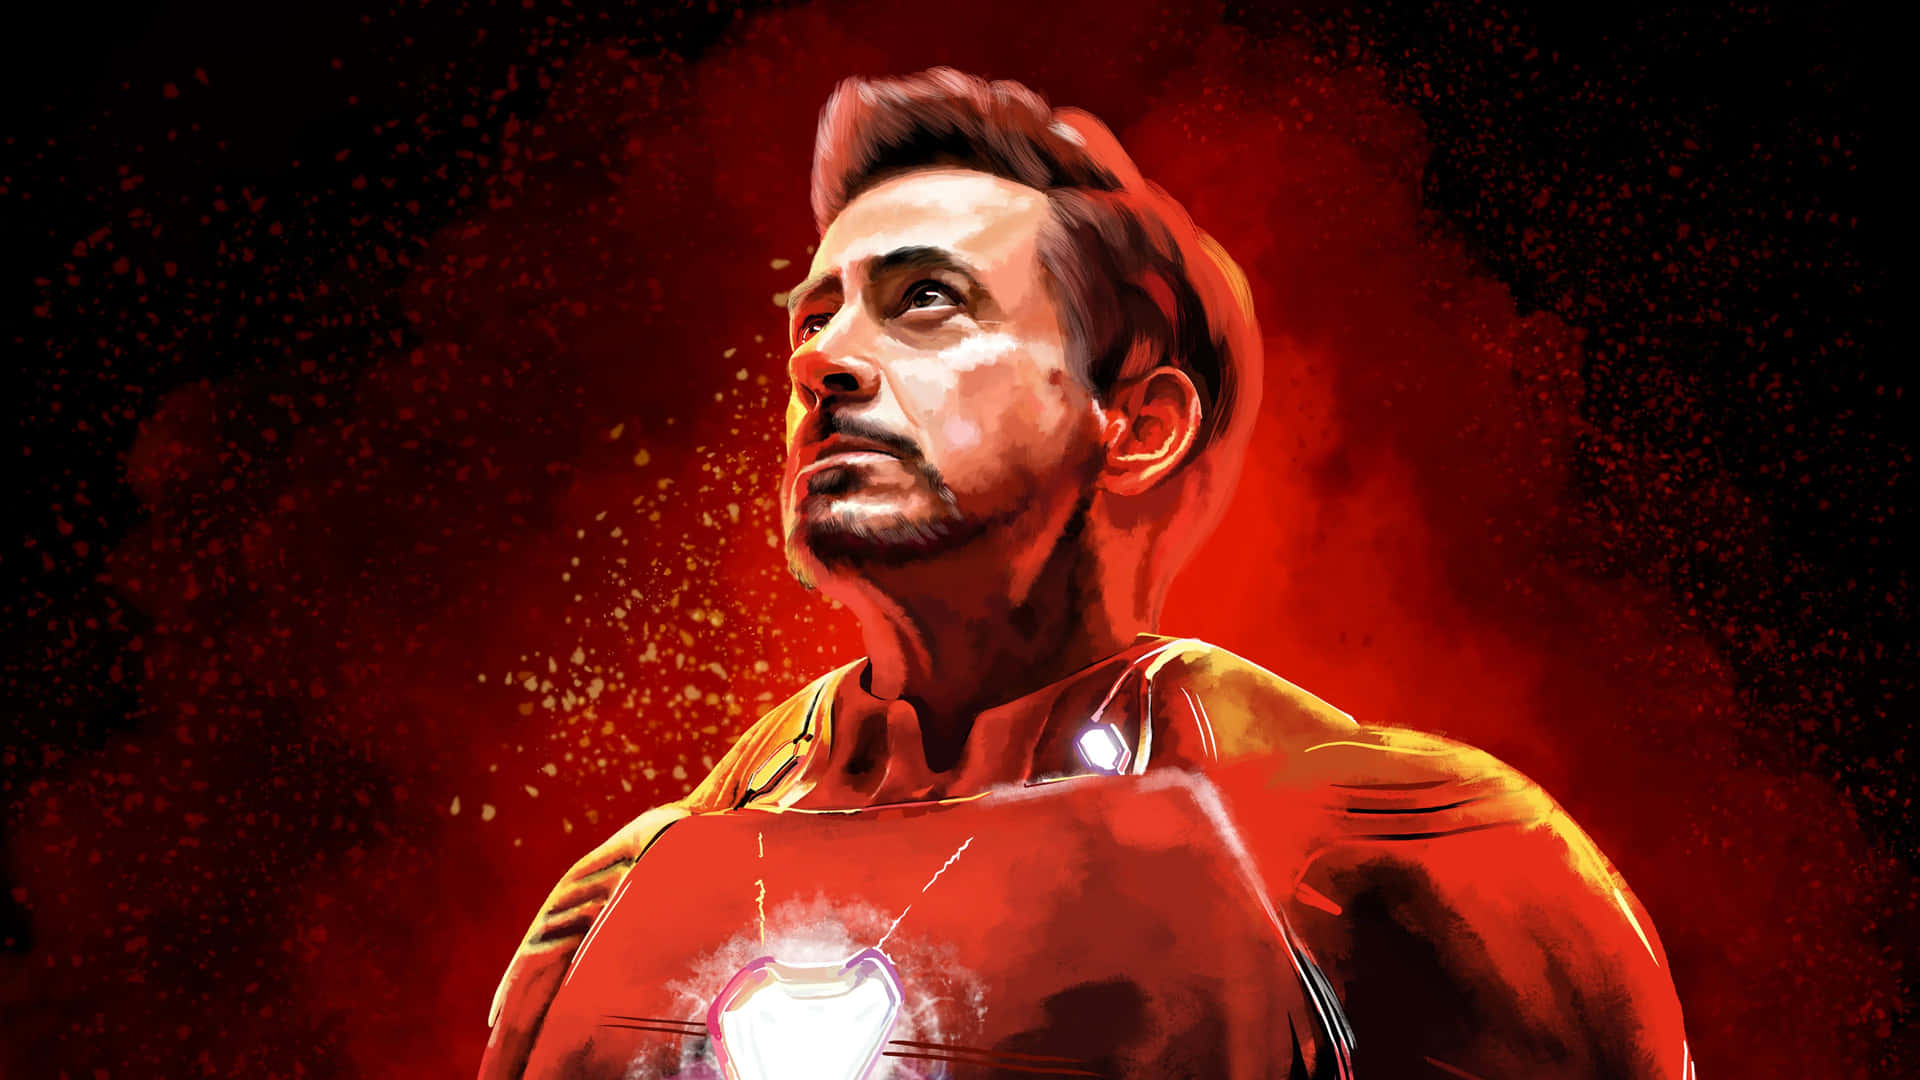 Tony Stark Iron Man Red Backdrop